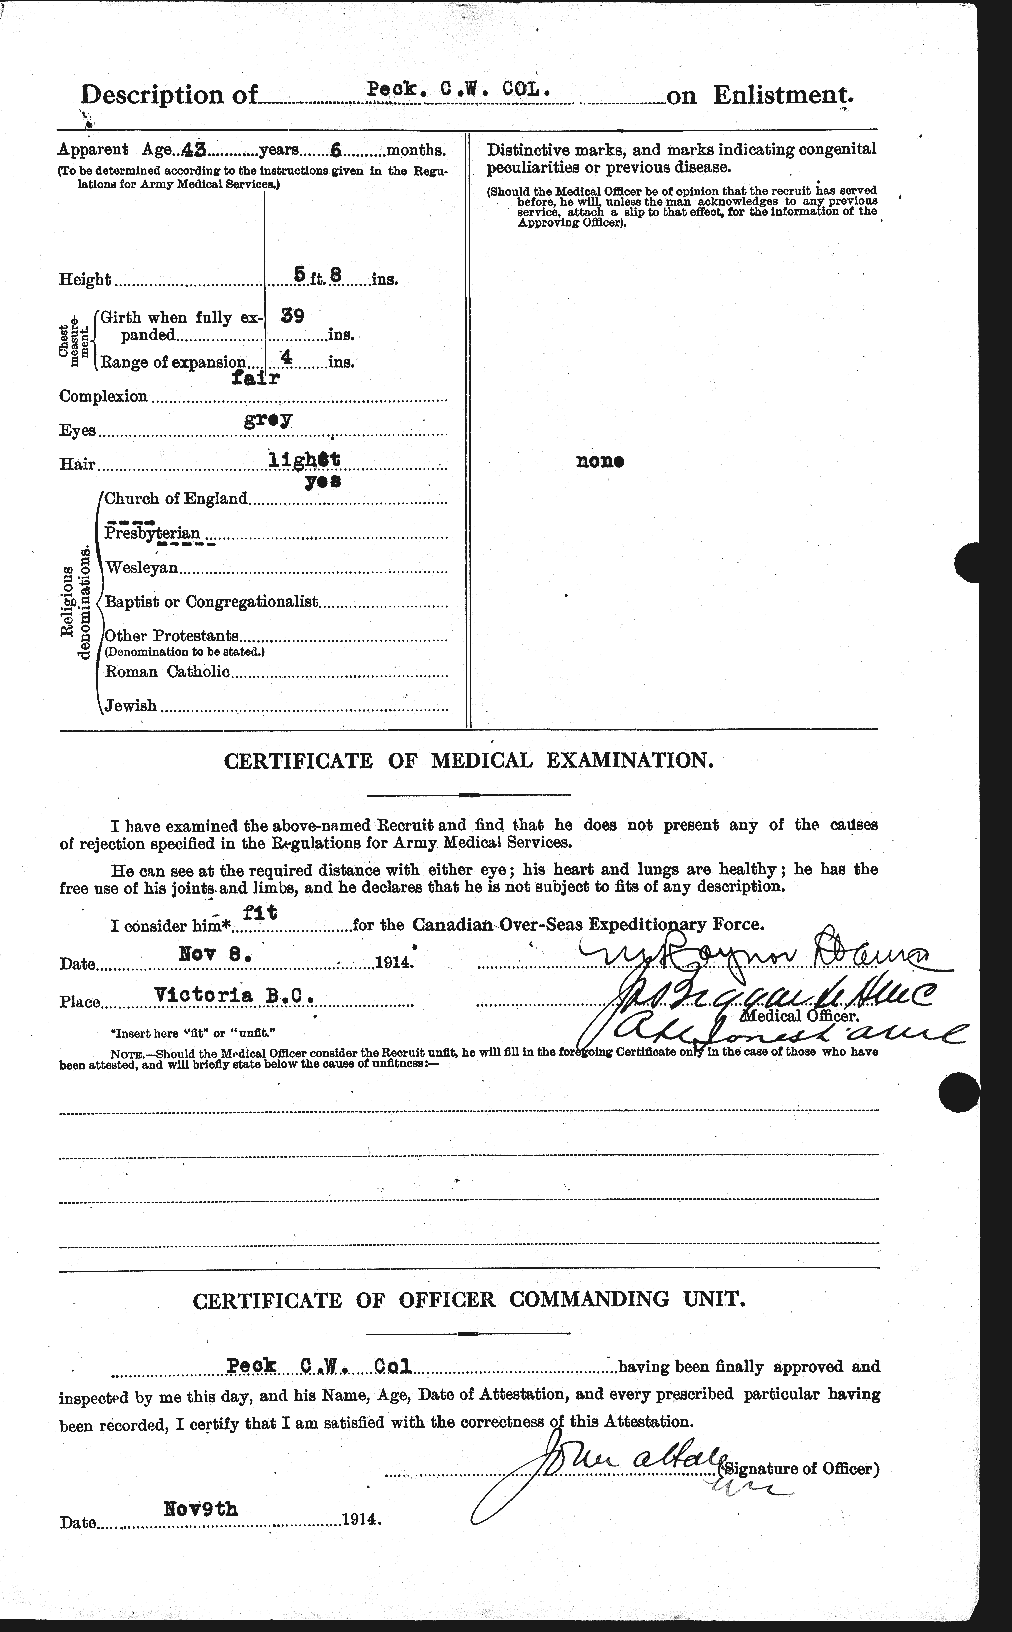 Dossiers du Personnel de la Première Guerre mondiale - CEC 570903b